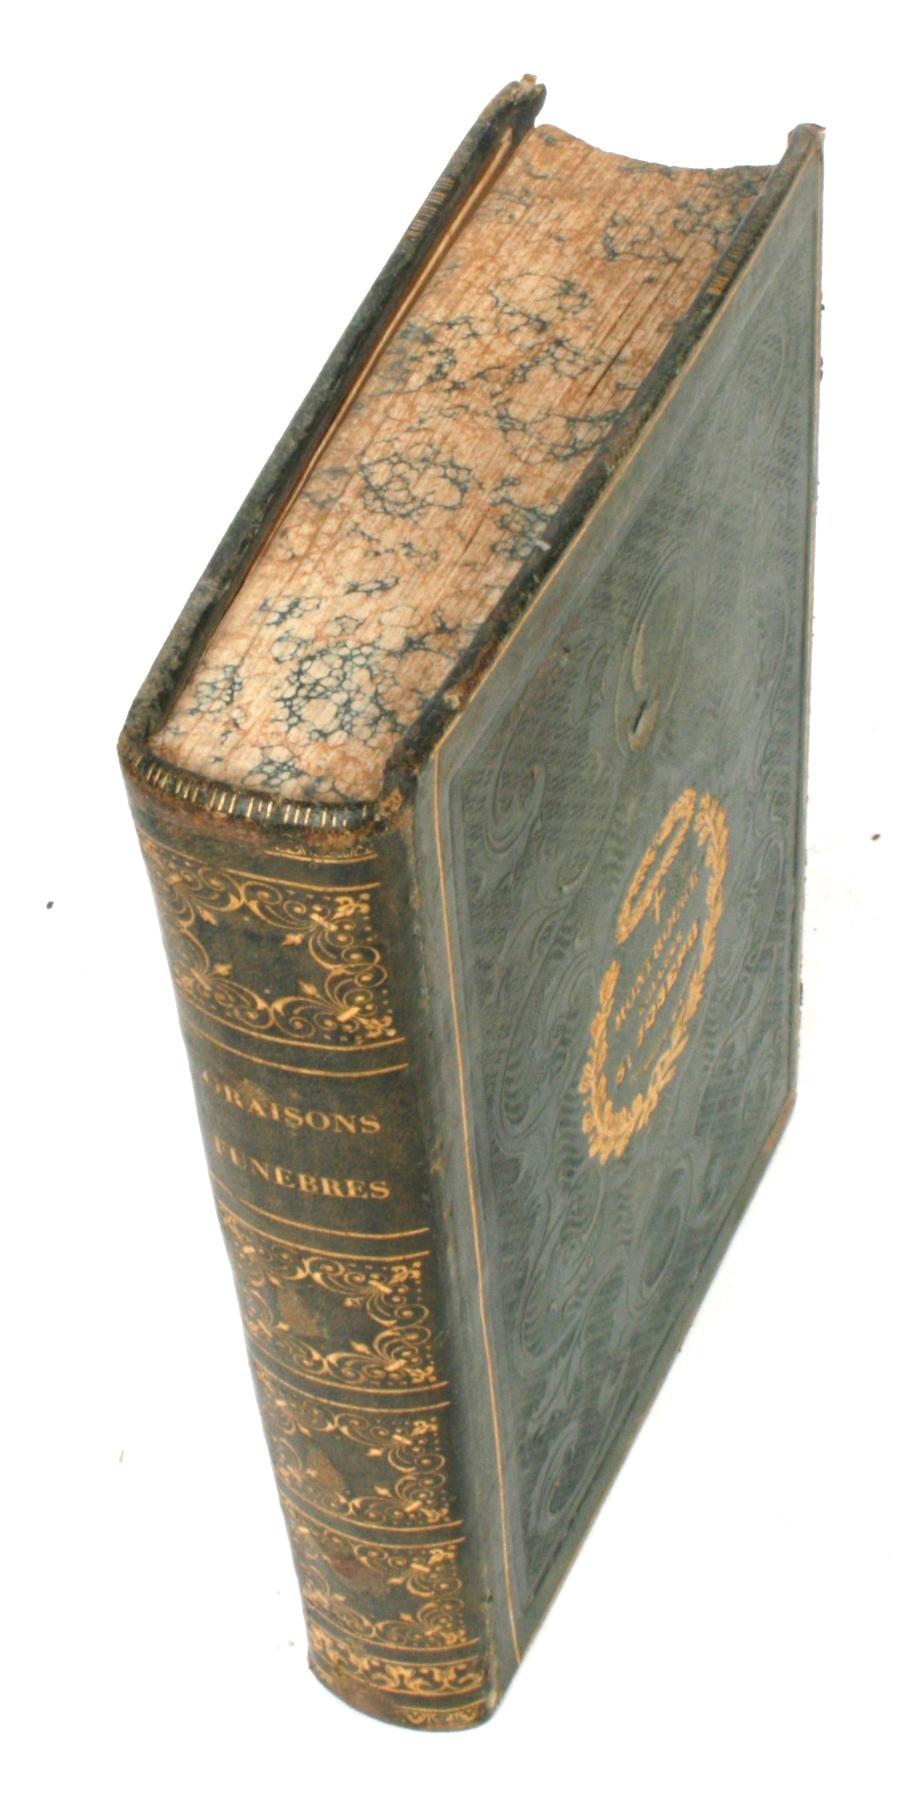 Oraisons Funèbres de Mascaron, Bourdaloue, Massillon, et Autres Orateurs, 1837 1